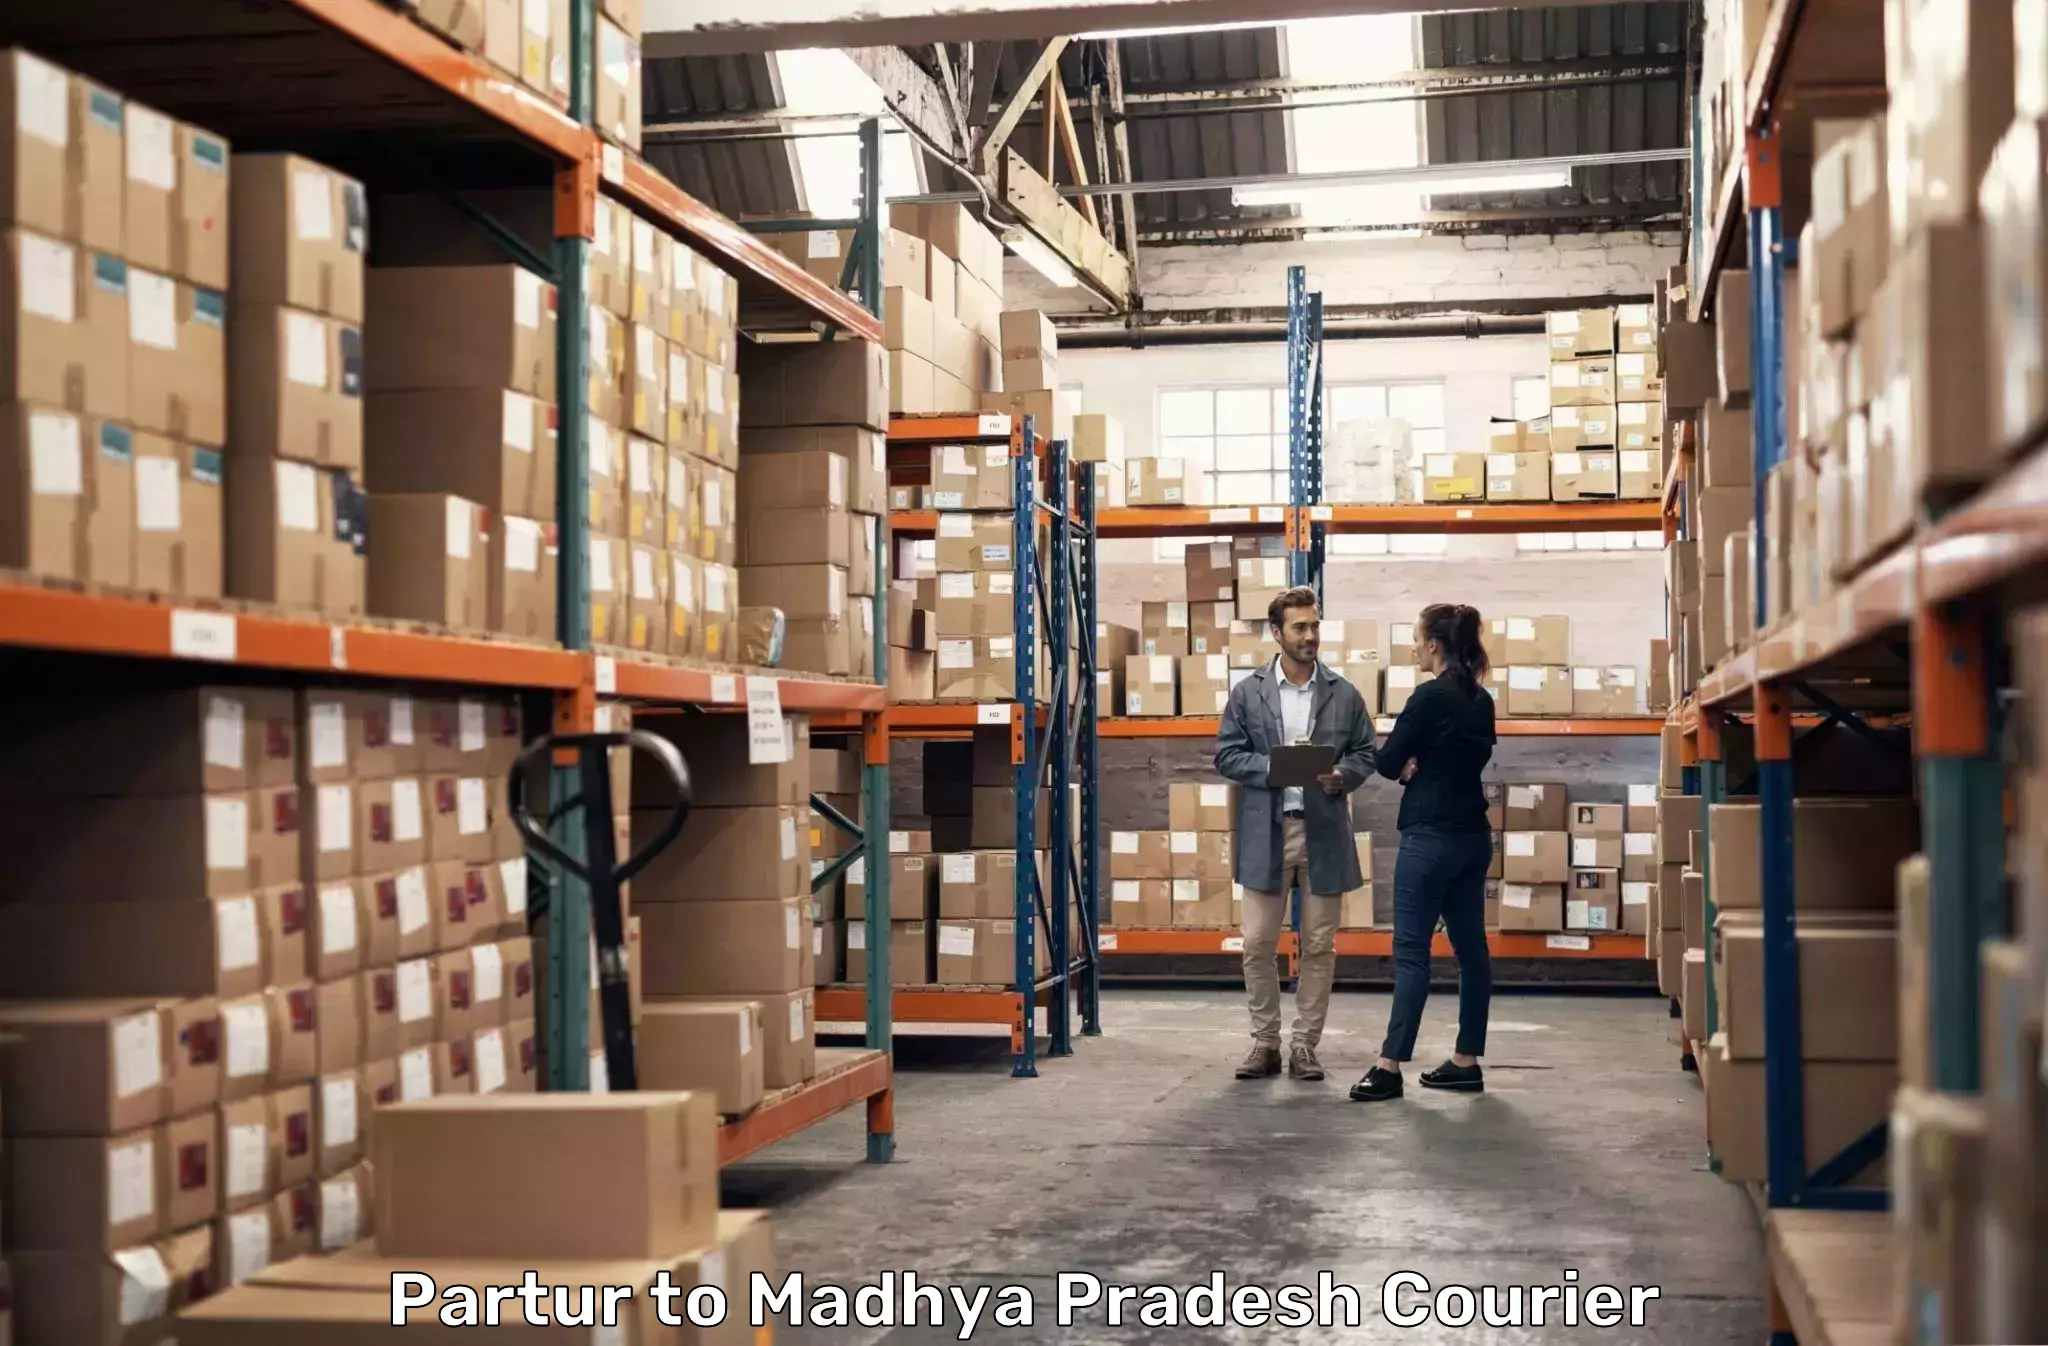 Reliable parcel services Partur to Rampur Baghelan